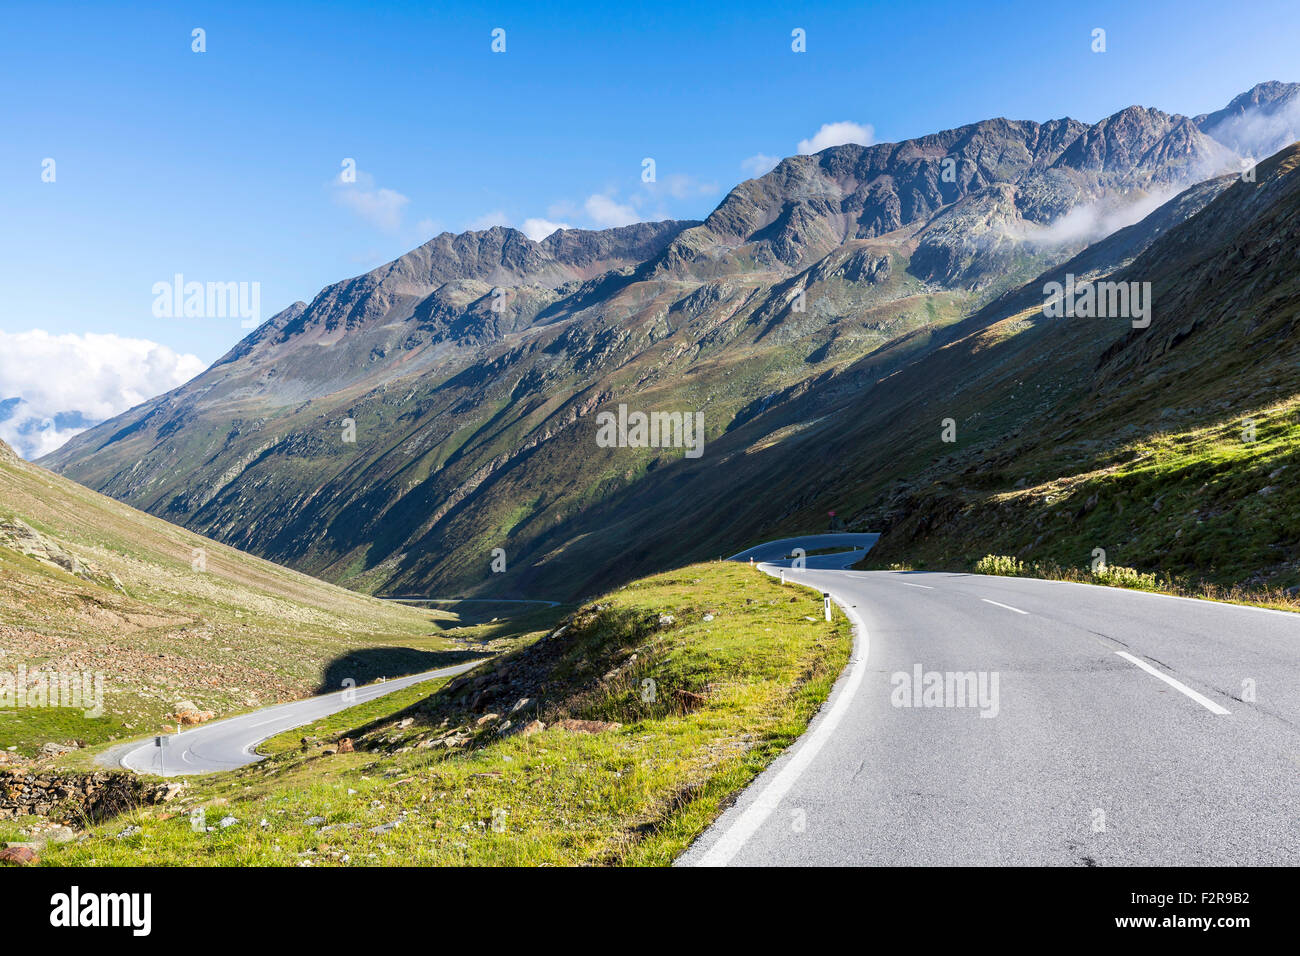 Route du col de la montagne, Timmelsjoch, Passo del Rombo, Ötztal, Tyrol, Autriche Banque D'Images